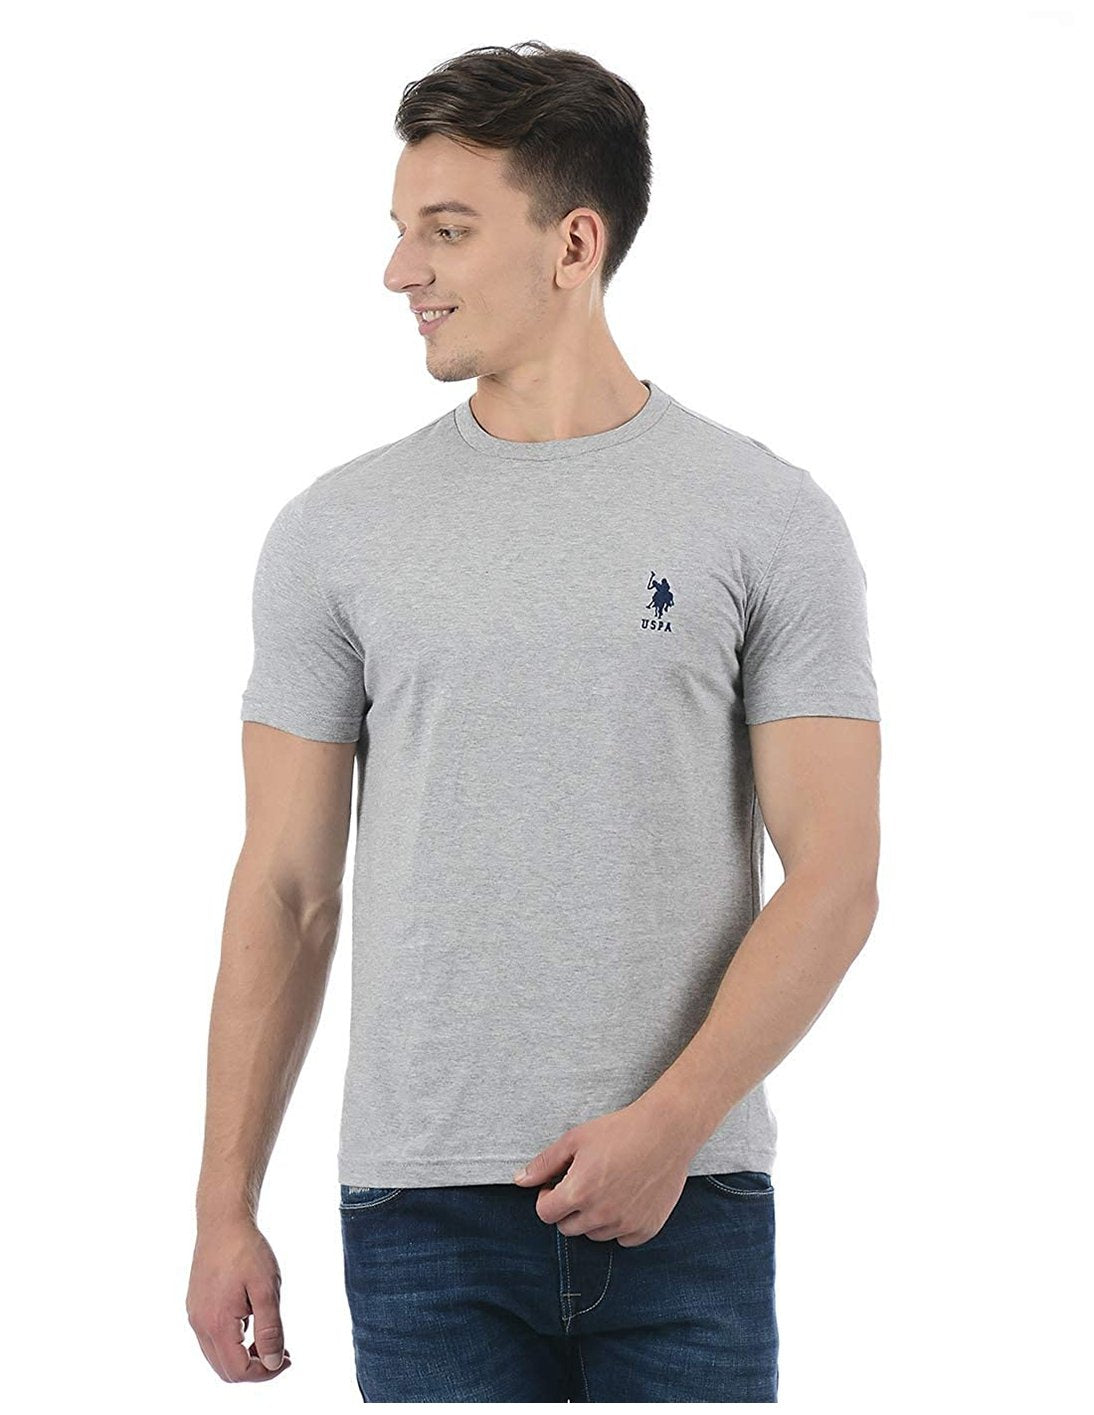 U.S. Polo Assn. Cotton Casual Grey T-shirt For Men - Stilento